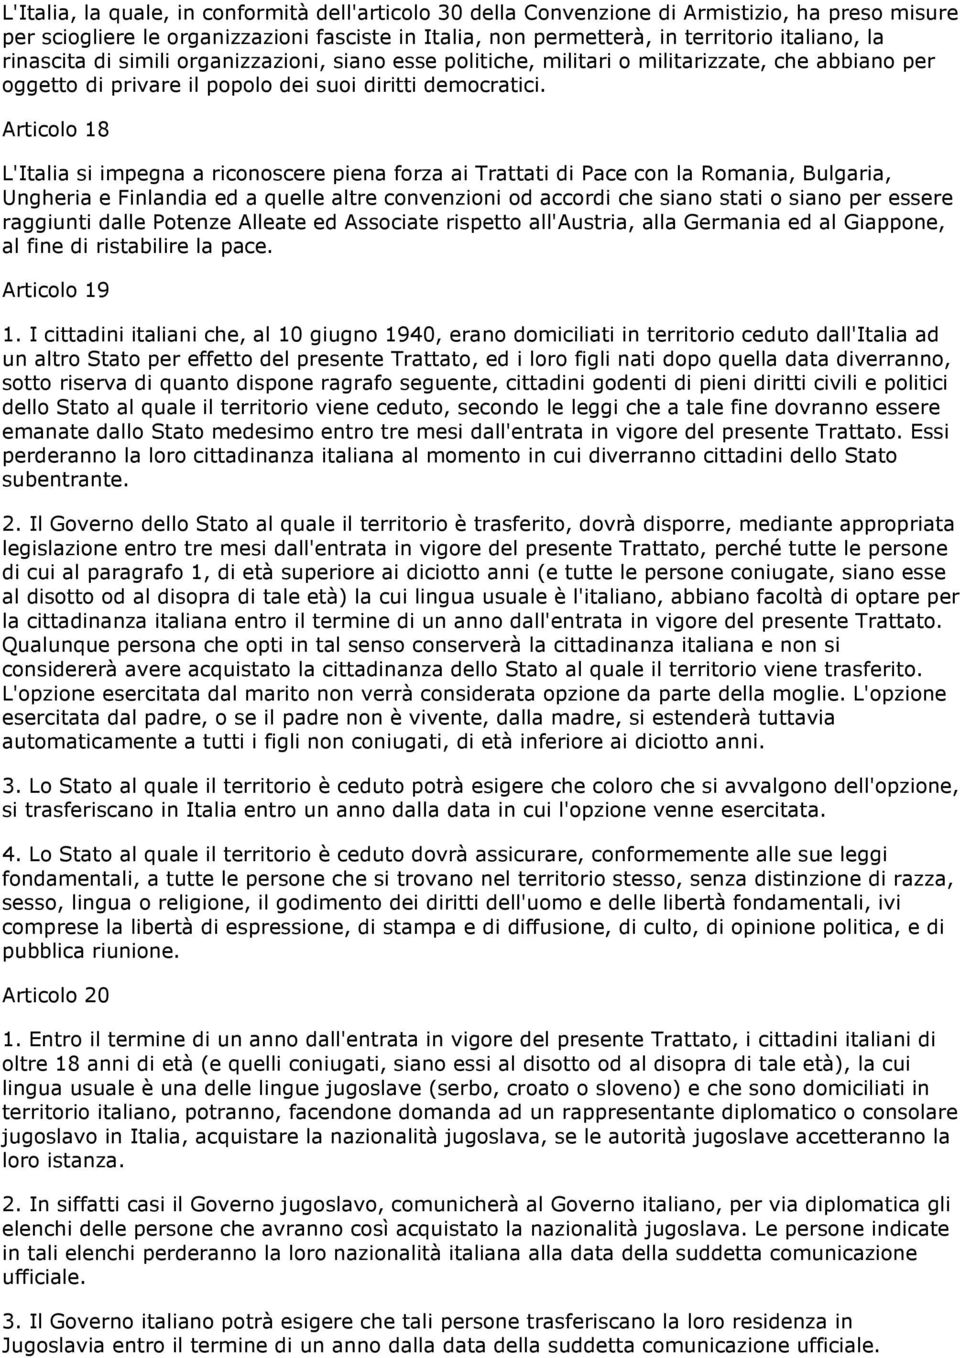 Articolo 18 L'Italia si impegna a riconoscere piena forza ai Trattati di Pace con la Romania, Bulgaria, Ungheria e Finlandia ed a quelle altre convenzioni od accordi che siano stati o siano per